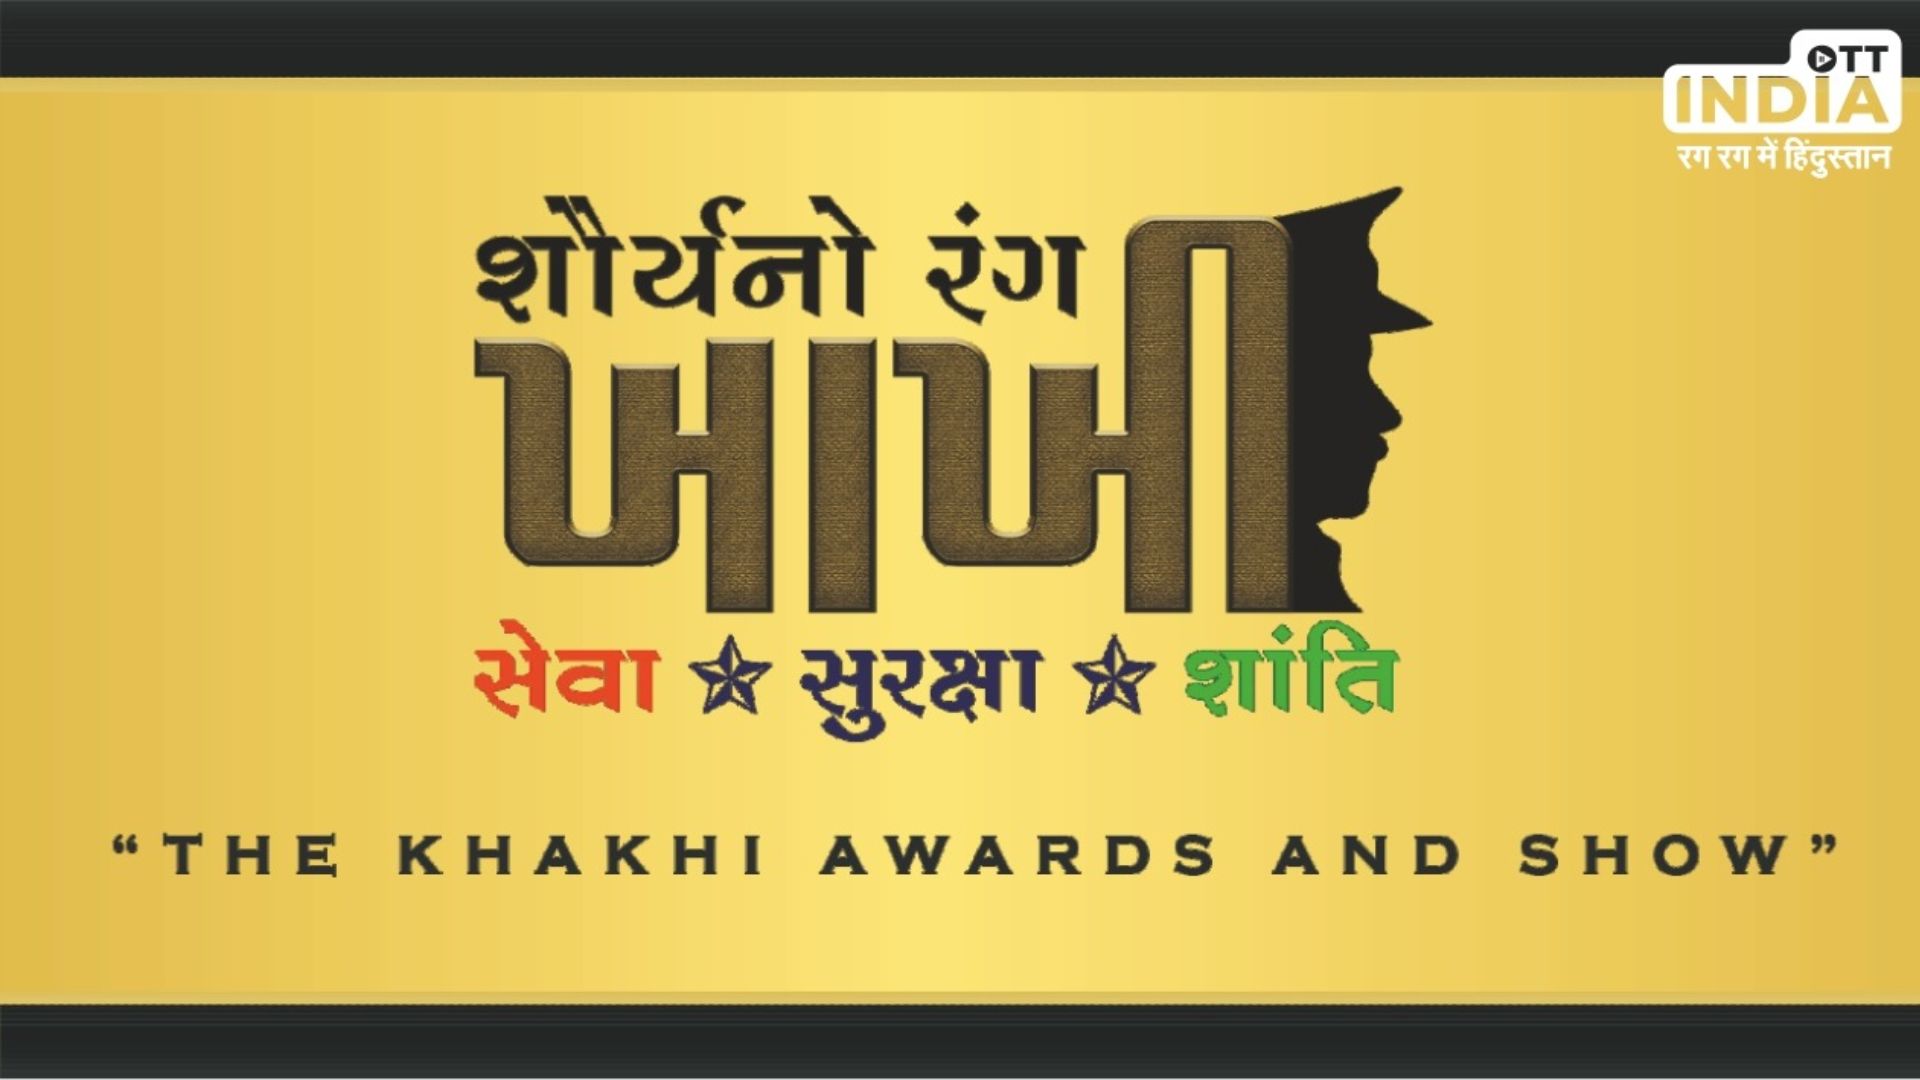 The Khakhi Awards And Show : गुजरात पुलिस की सेवा की सराहना के लिए दिया जाएगा ‘खाखी’ पुरस्कार, एक शाम ‘खाखी’ के नाम…